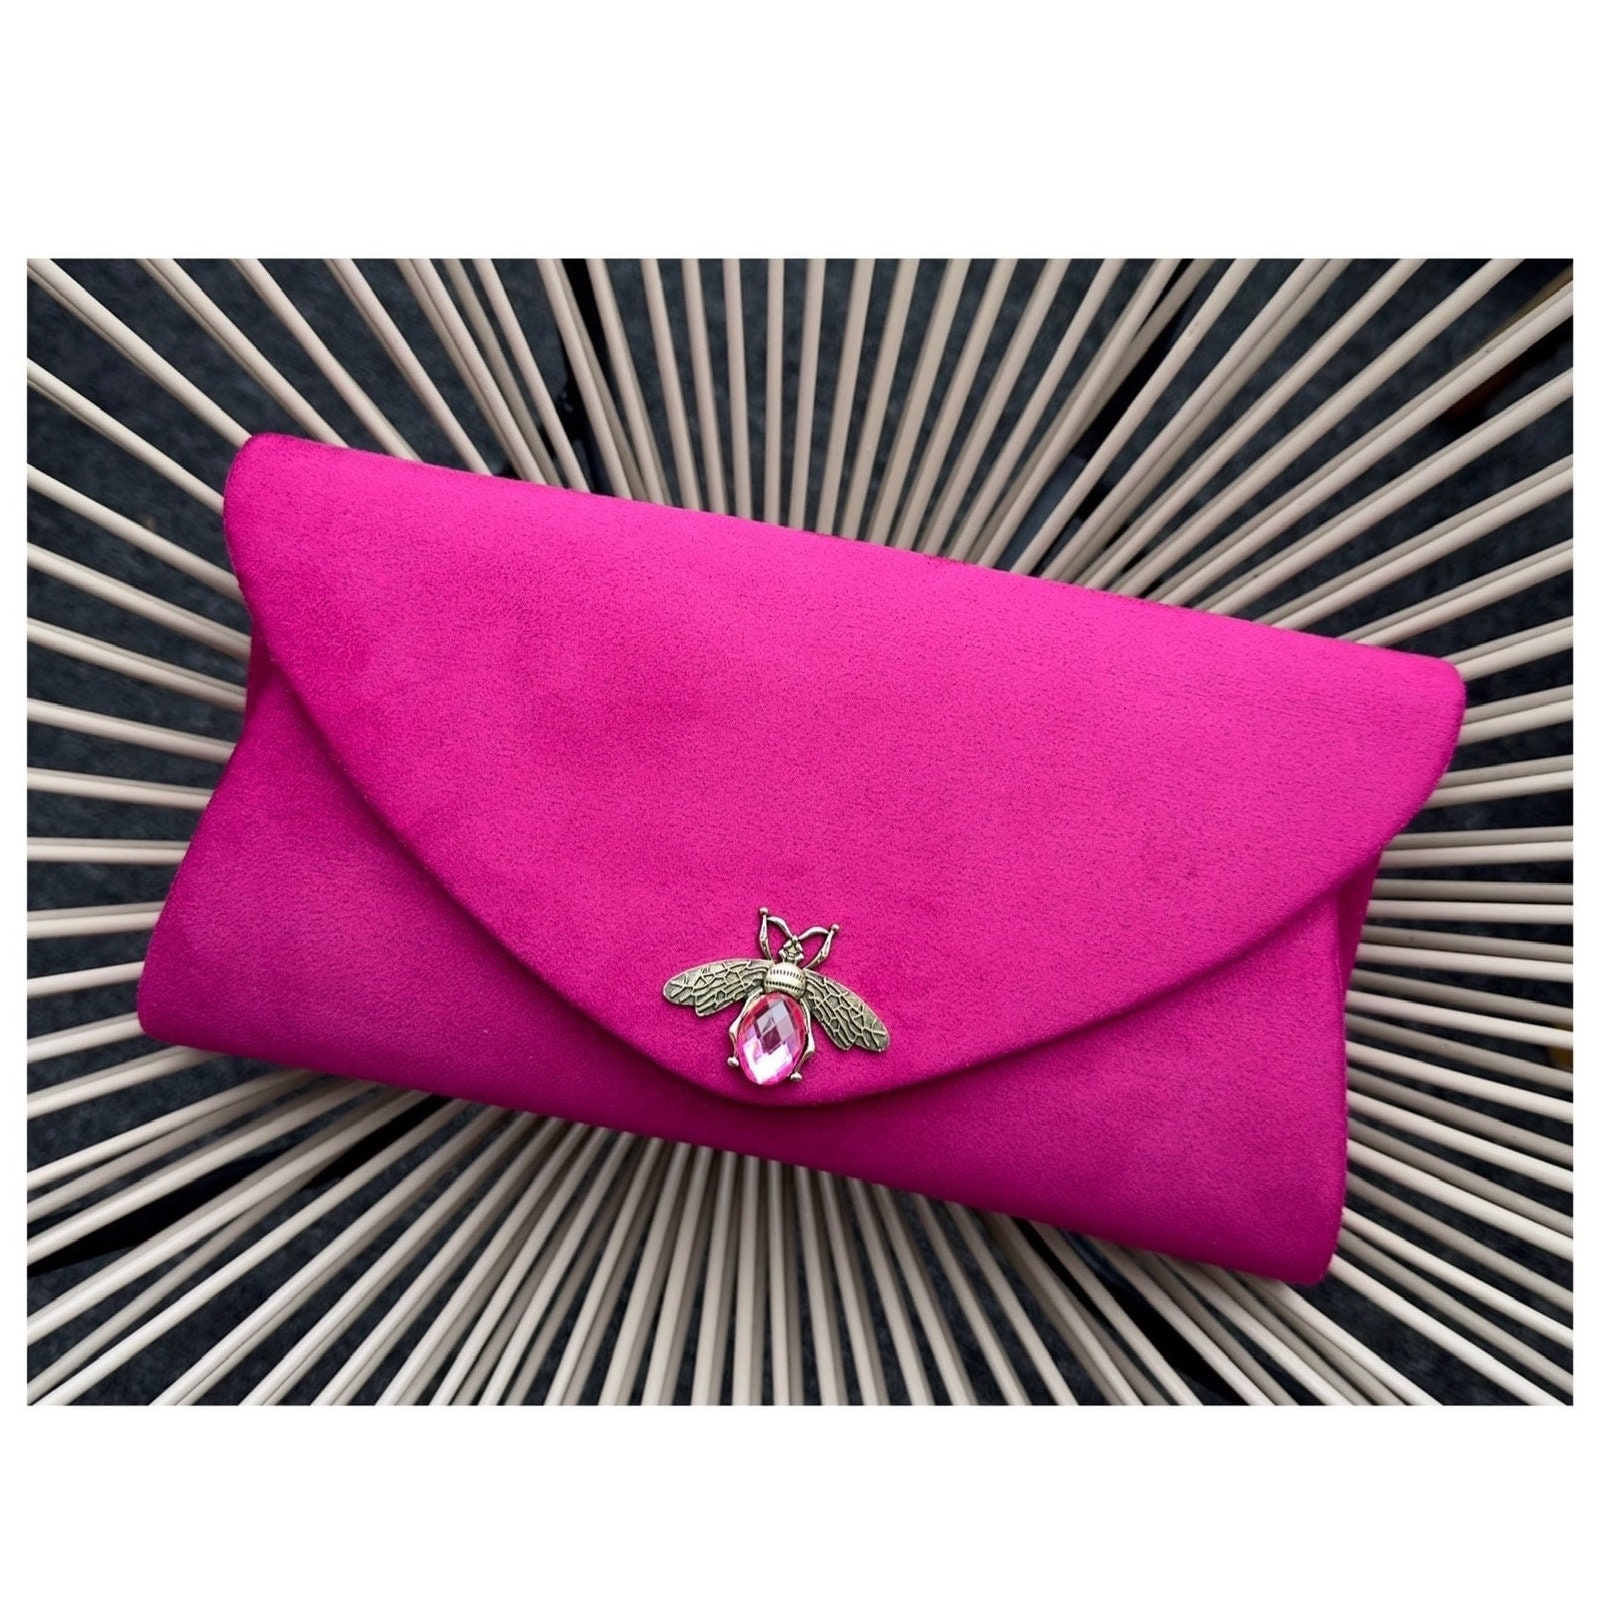 Clutch Bag. Pink Evening Bag. Envelope Clutch Bag. Velvet 